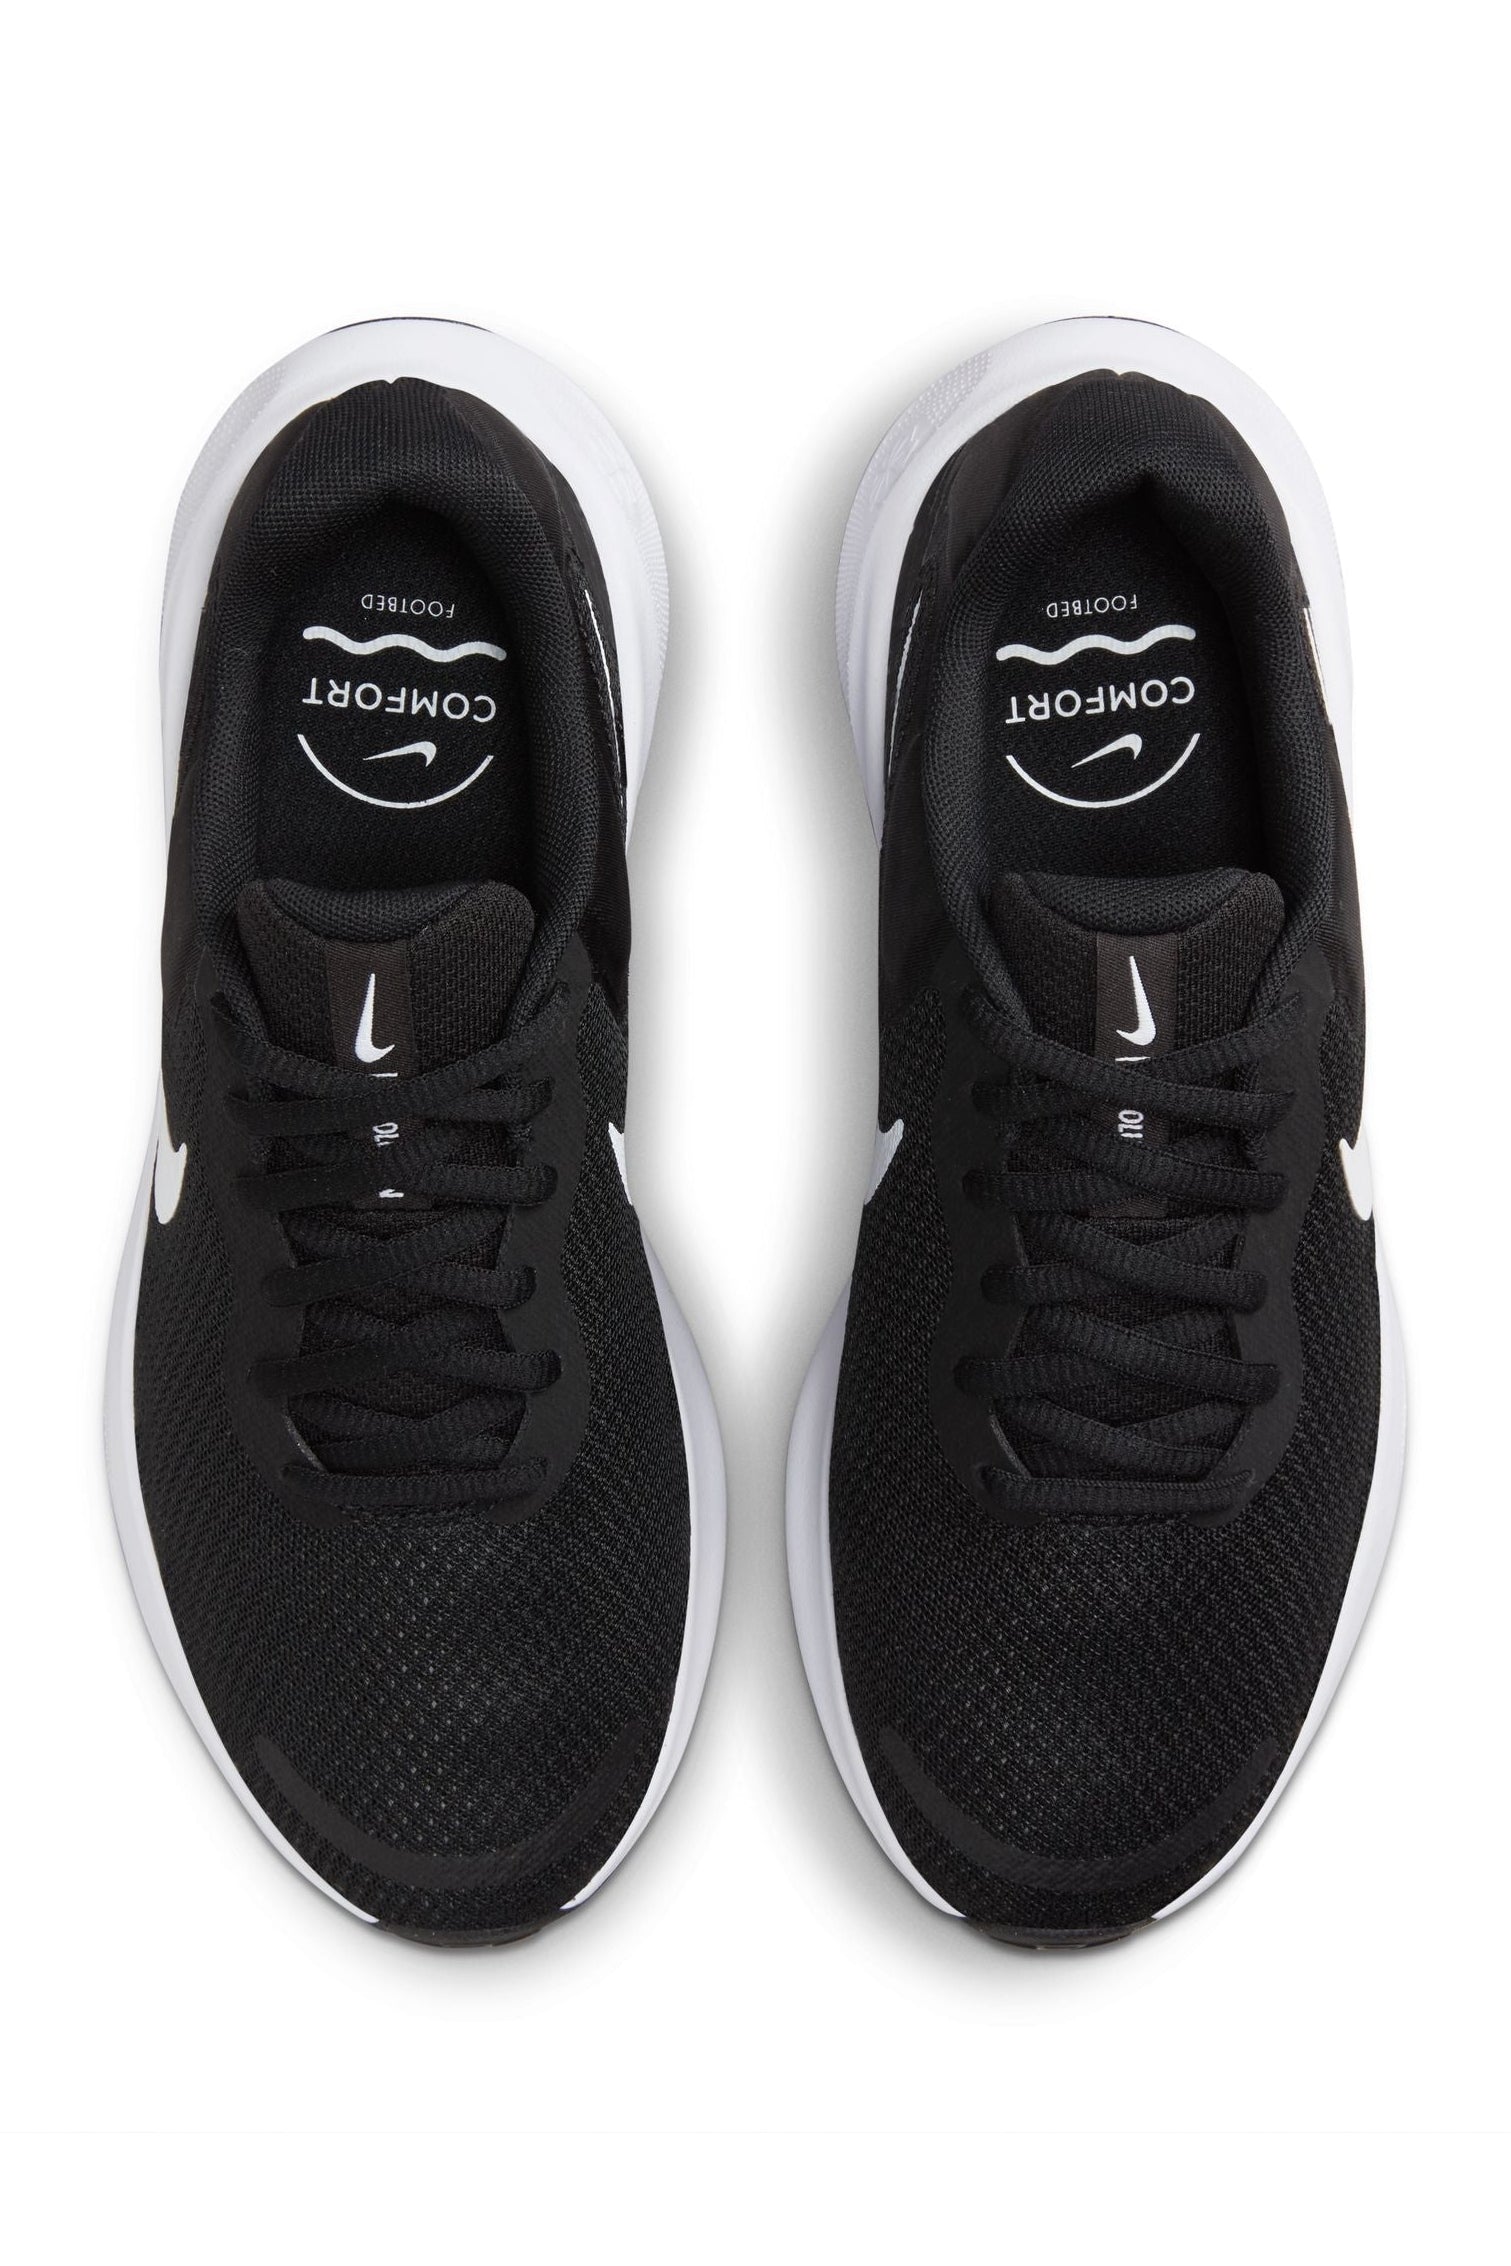 נעלי ספורט לנשים Revolution 7 בצבע שחור ולבן